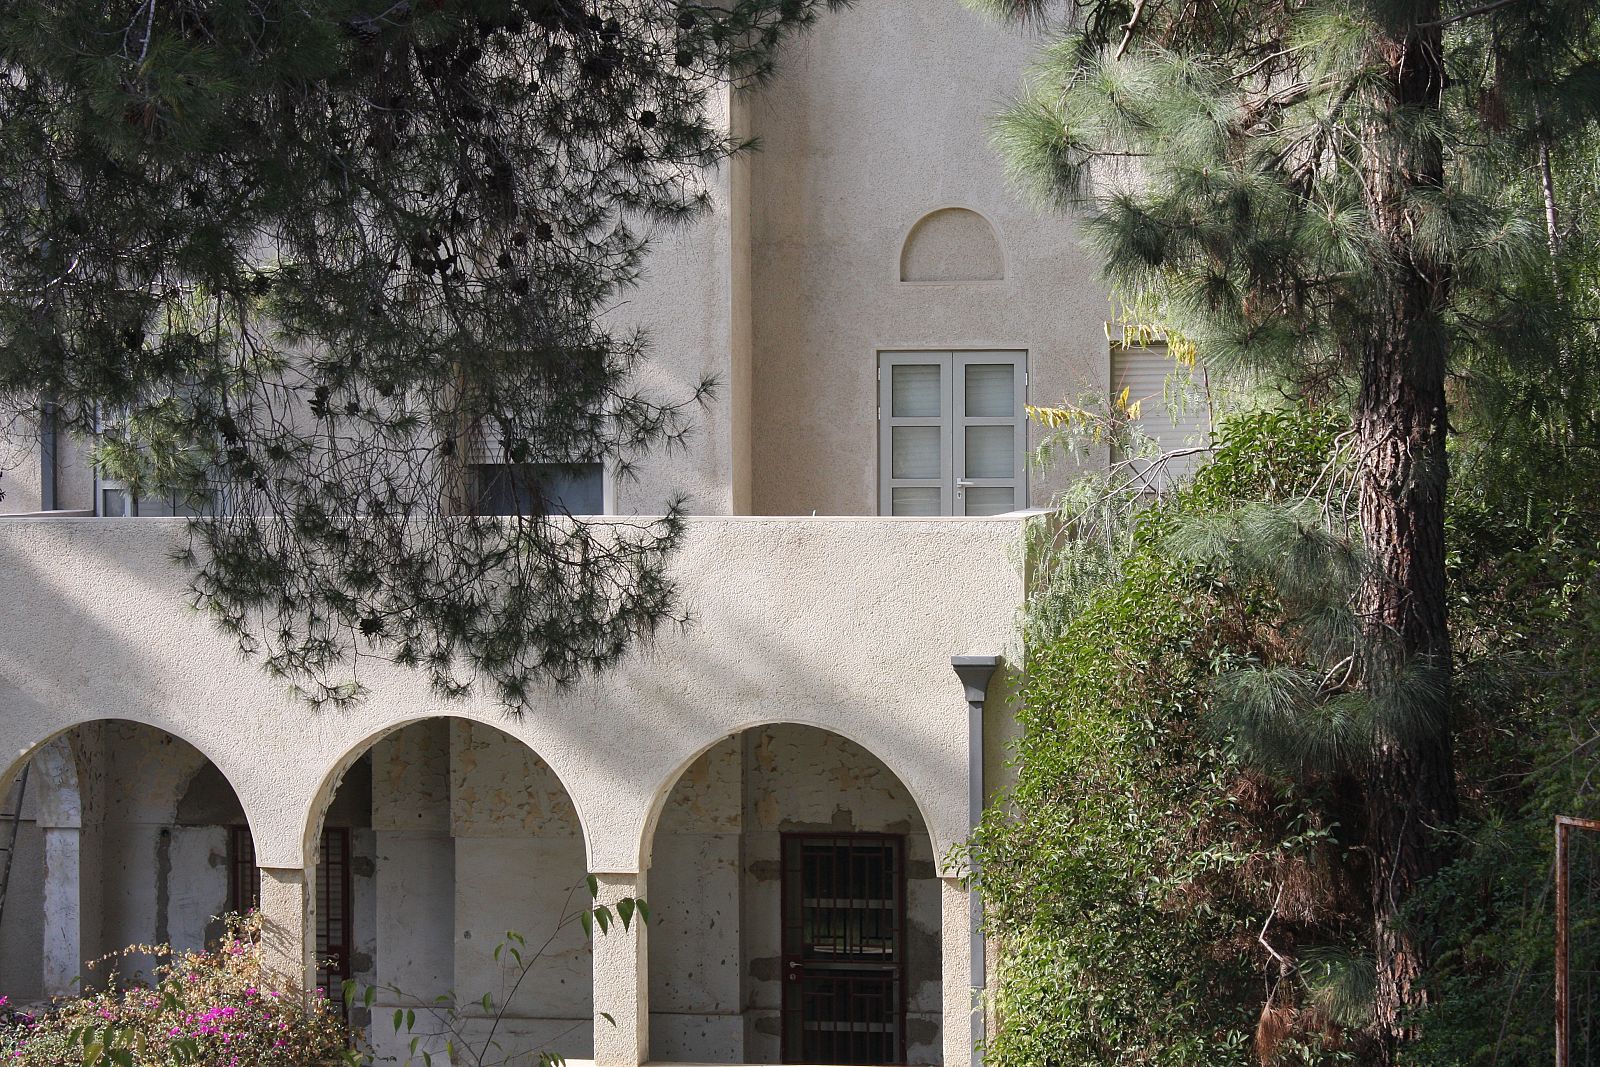 Beit Aghion, residencia oficial del primer ministro israelí en Rehavia, Jerusalén.